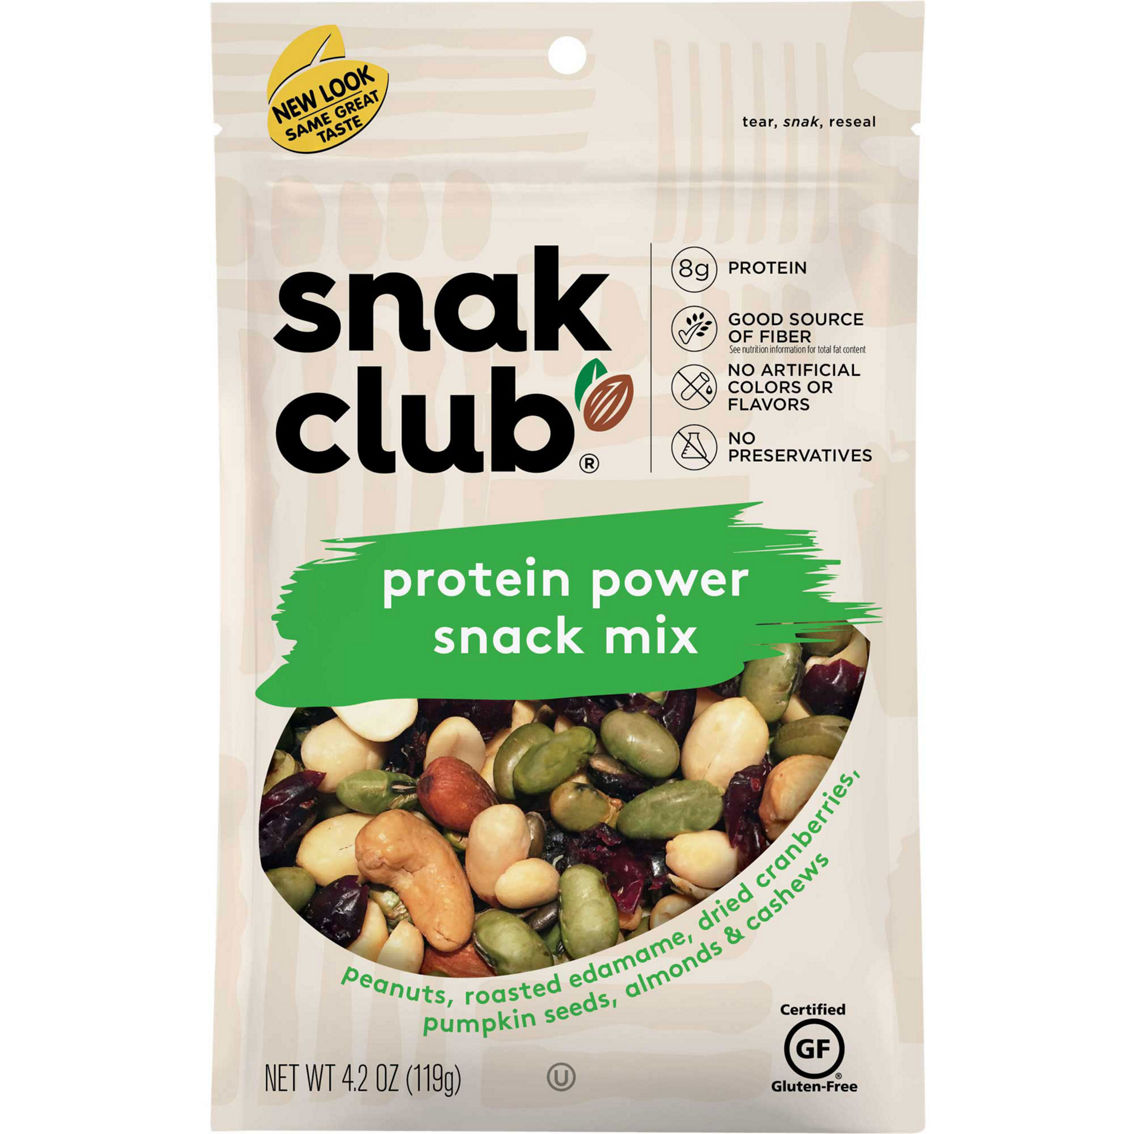 Snak Club Protein Power Snack Mix 4.5 oz.